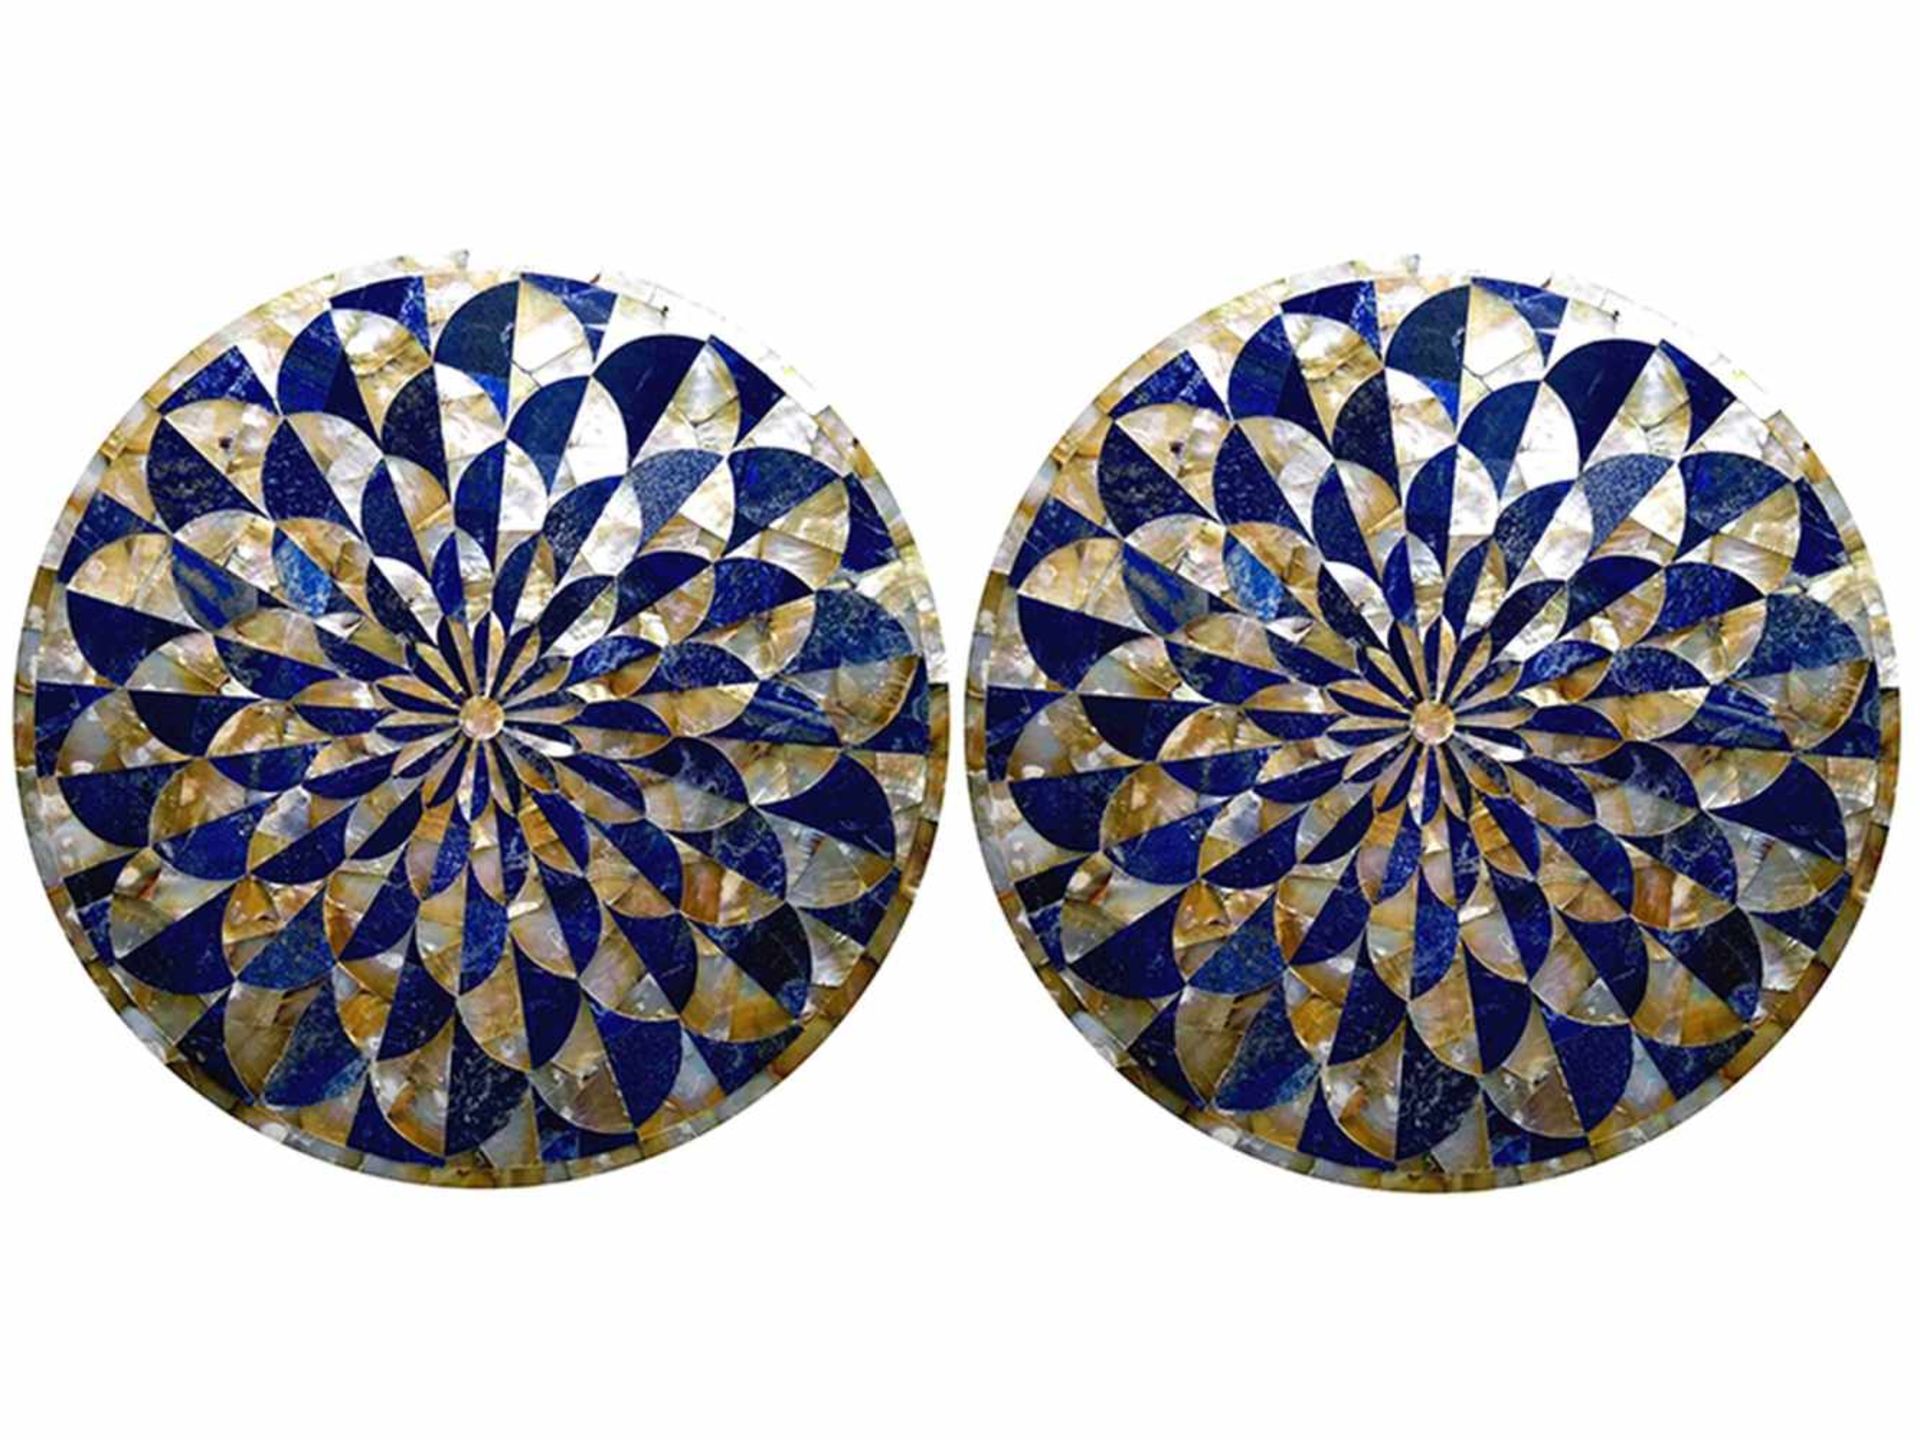 Pietra Dura-Tondi Durchmesser: 60 cm. Italien. In radialem Muster angelegte Pietra Dura-Platten - Bild 2 aus 3